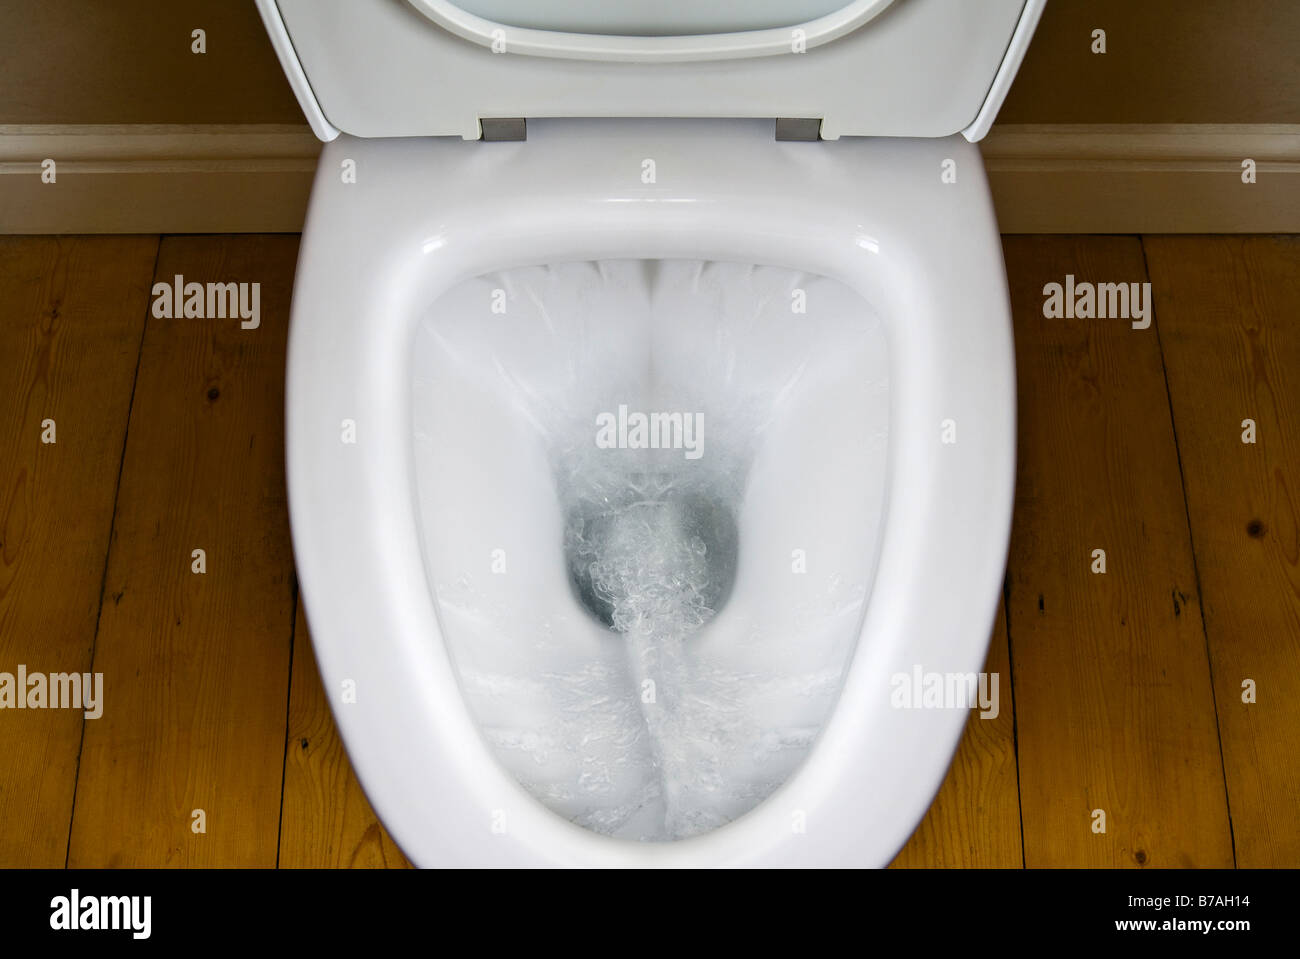 Wc pan immagini e fotografie stock ad alta risoluzione - Alamy